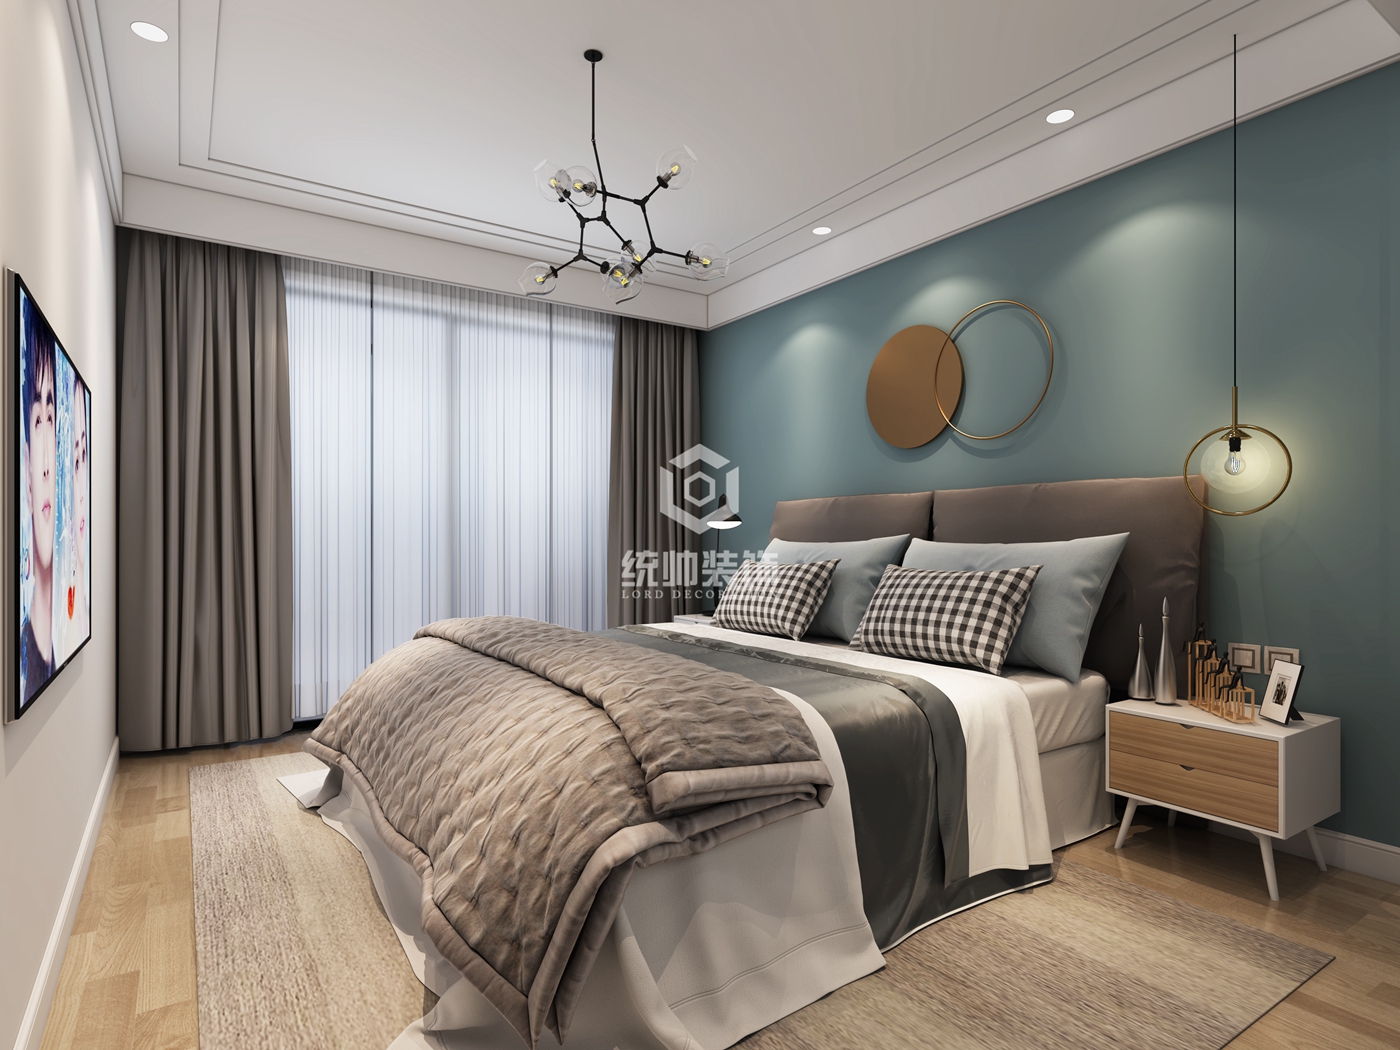 浦东新区望春都市家园110平方北欧风格平层卧室装修效果图